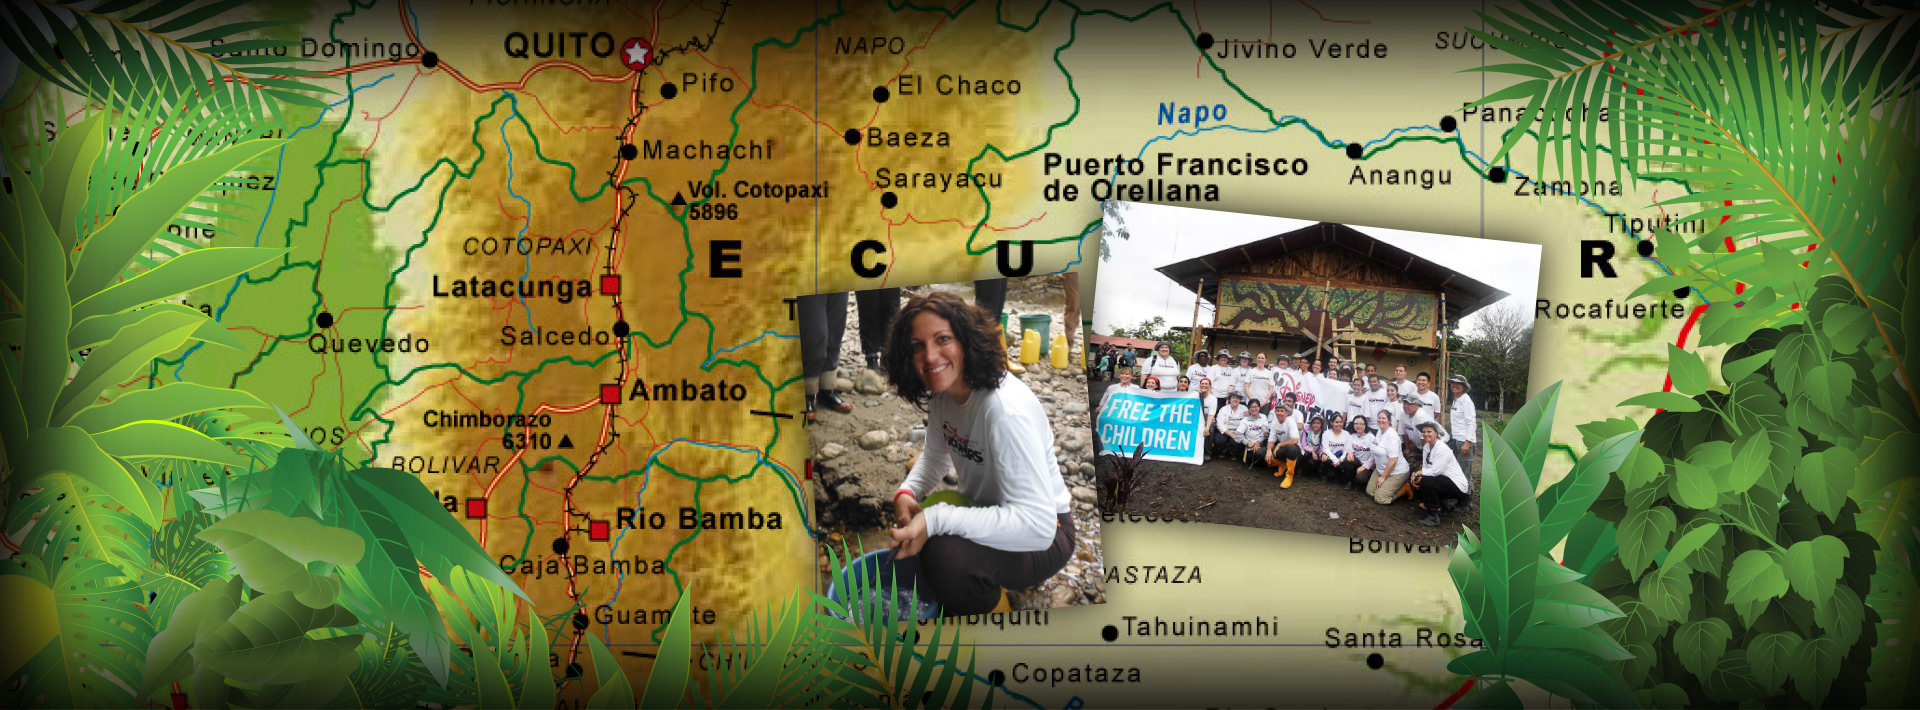 Volunteering in Ecuador